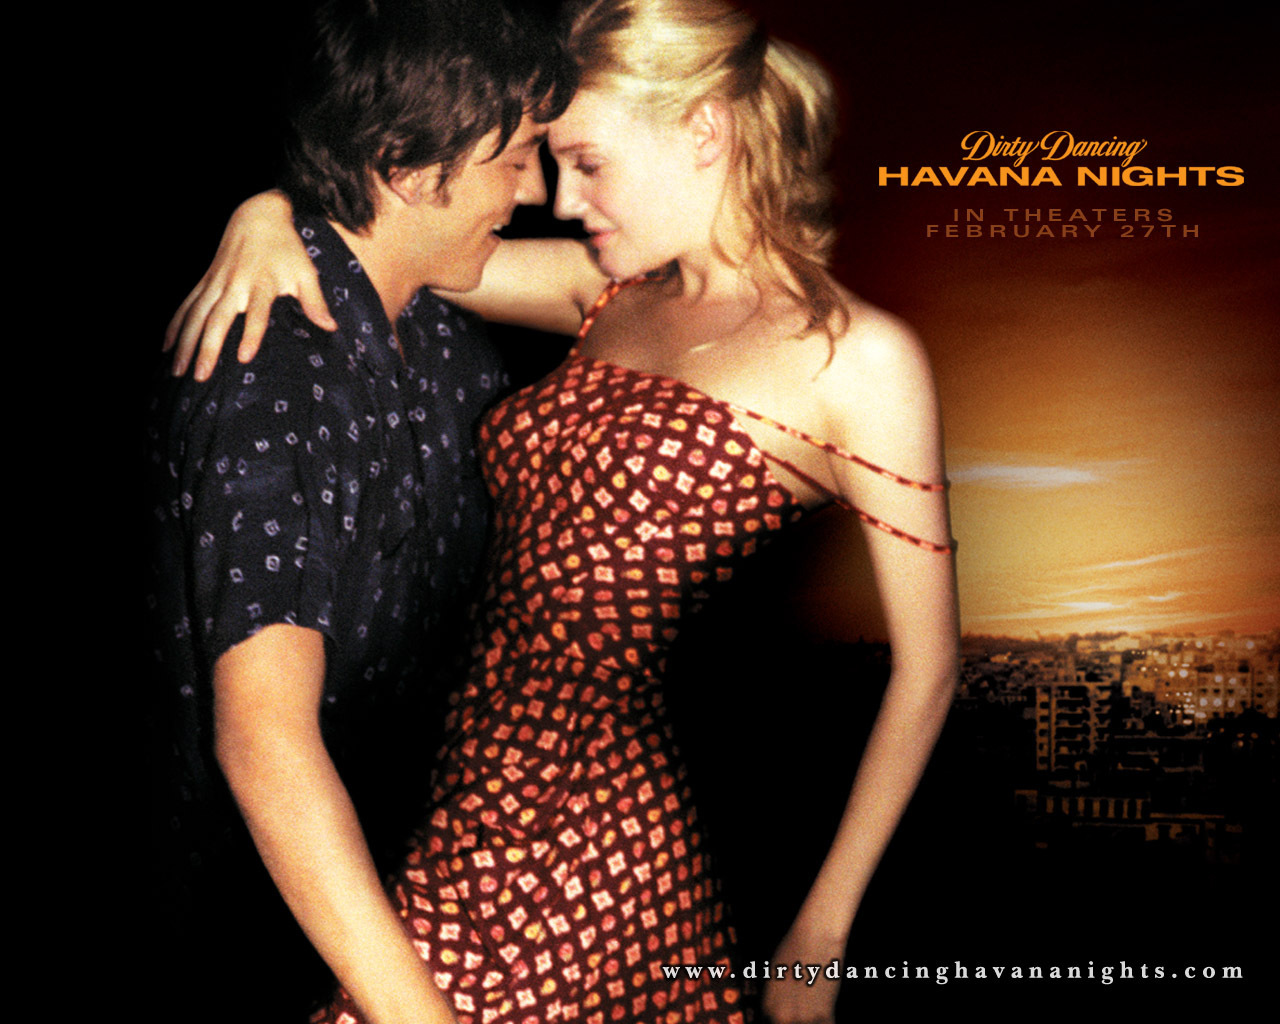 Dirty Dancing Havana Nights Wallpaper